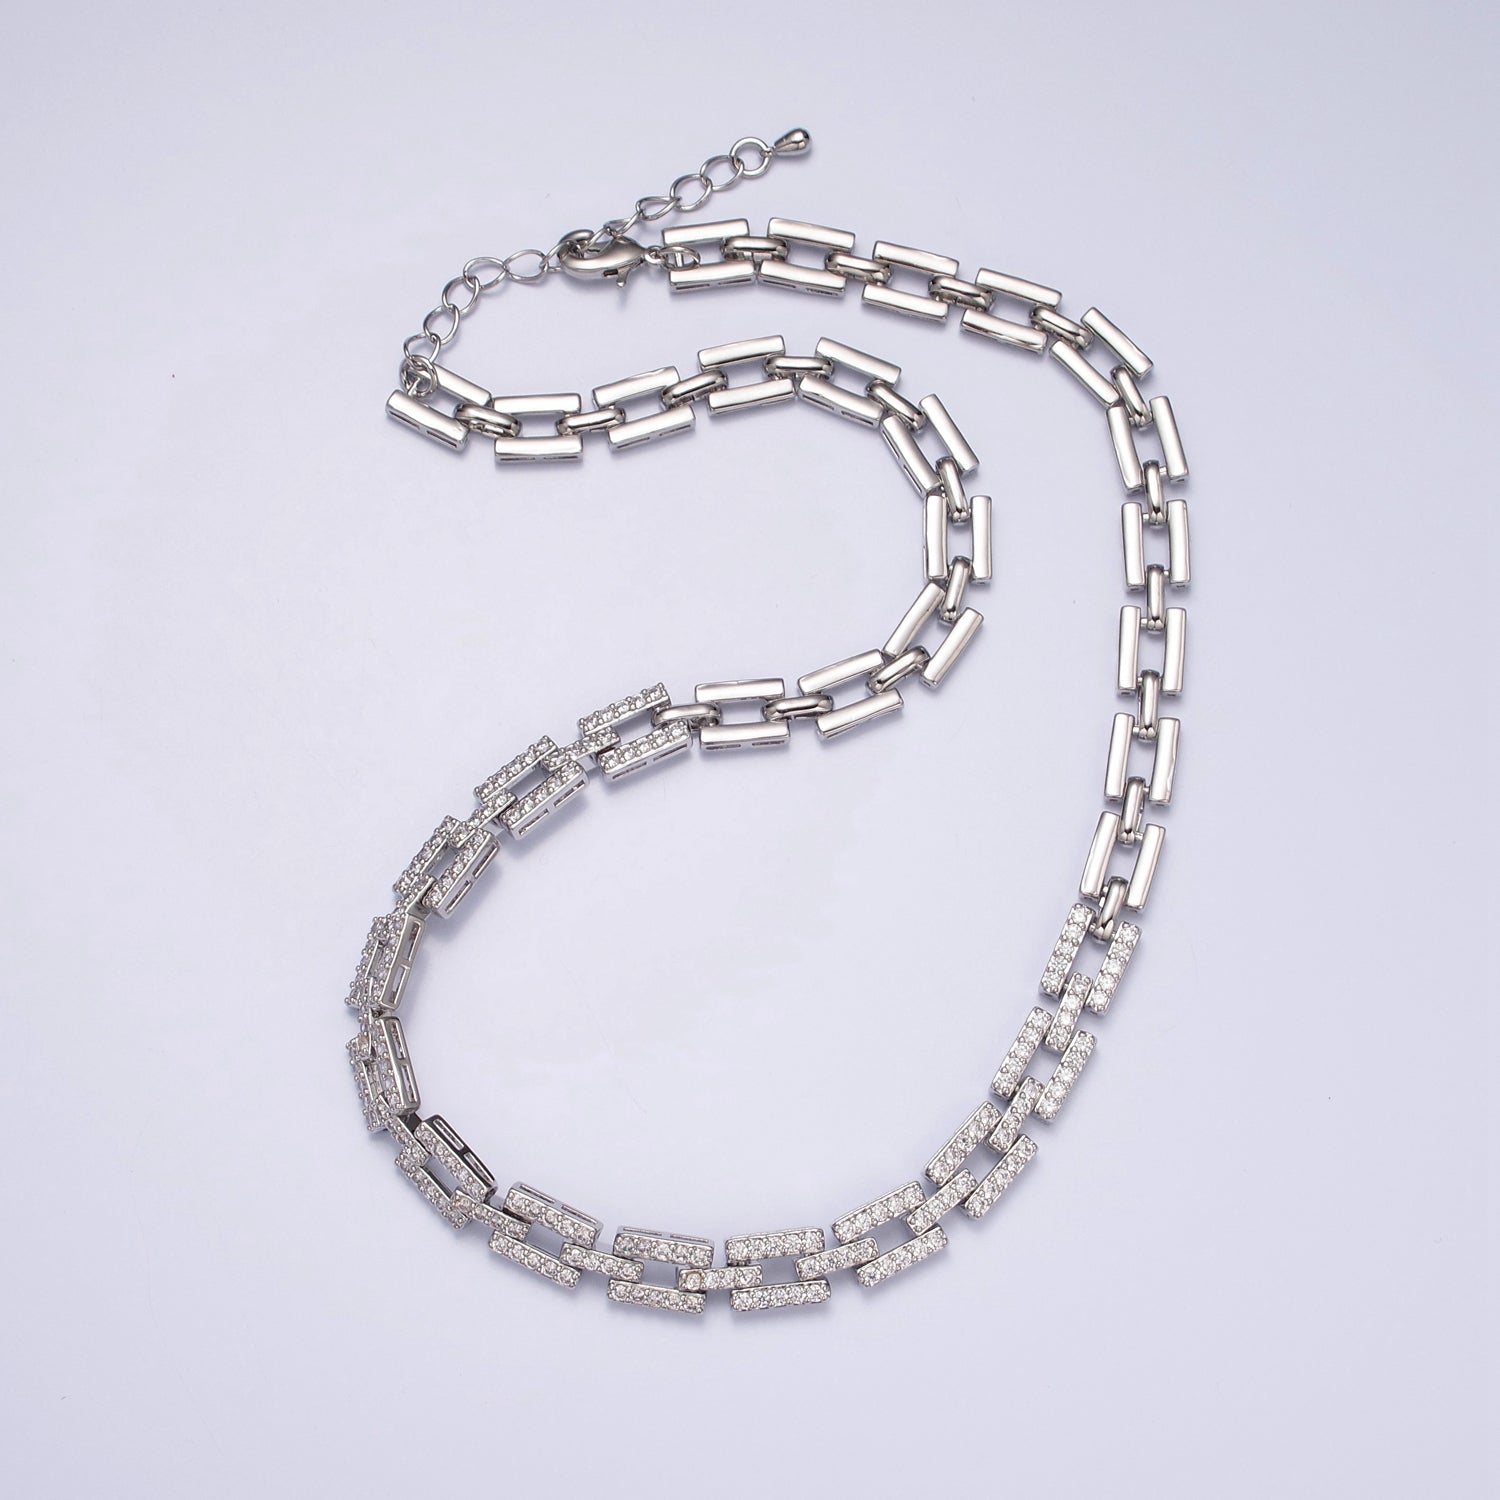 16 Inch Micro Pave CZ Cubic Zirconia Silver/Gold Unique Paper Clip Chain Necklace WA-1008 WA-1009 - DLUXCA